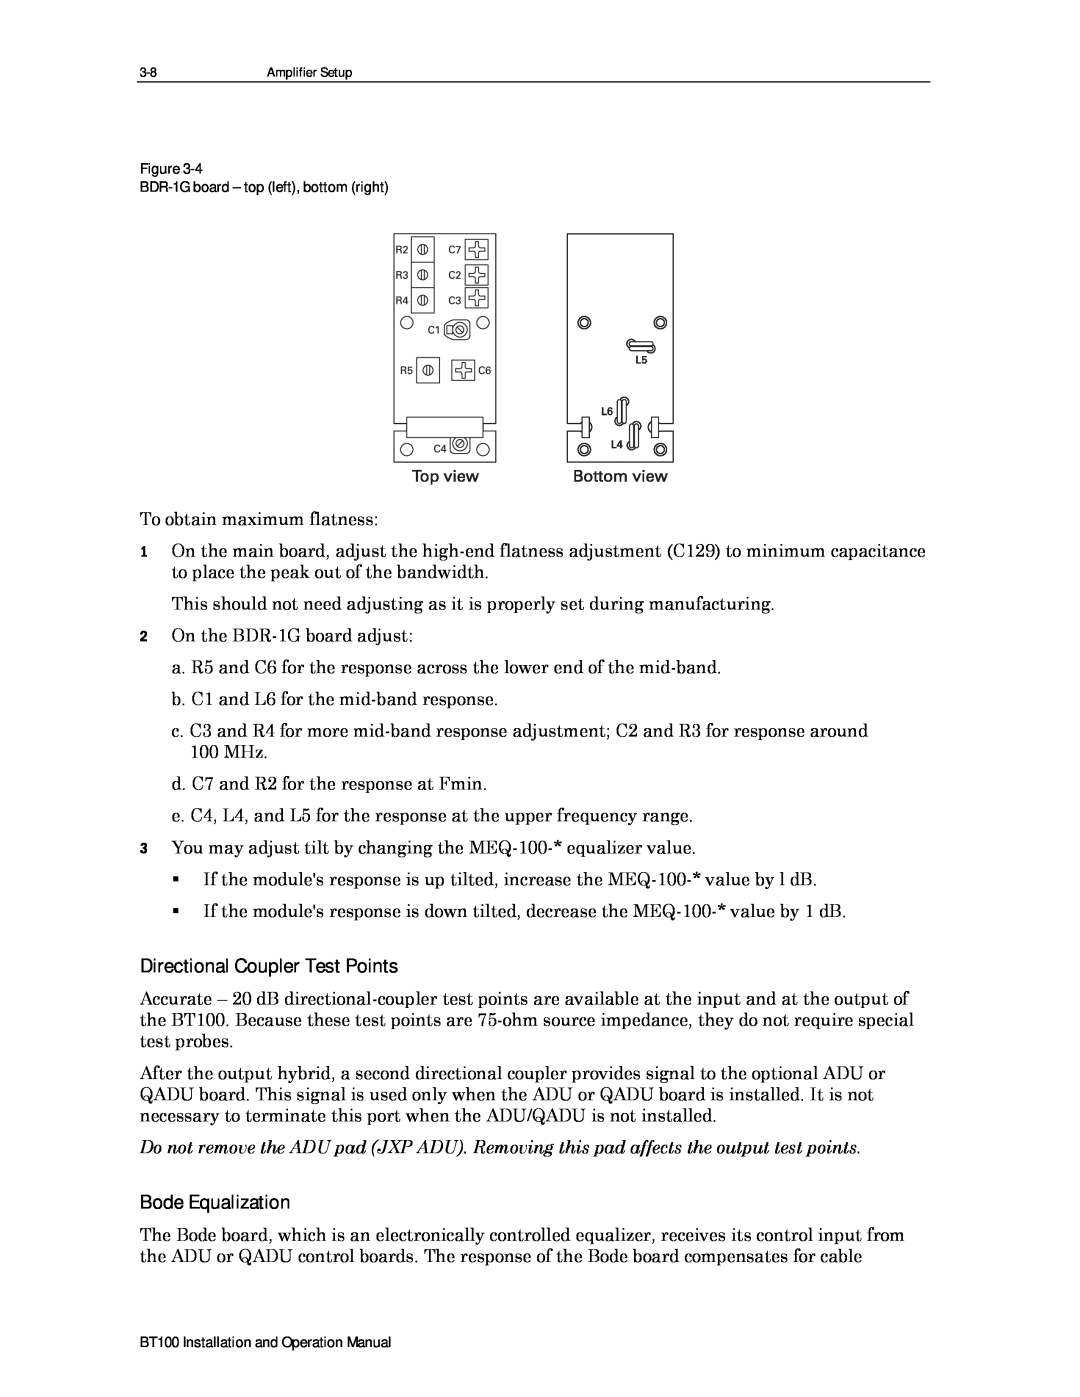 Motorola BT100 operation manual Directional Coupler Test Points, Bode Equalization 